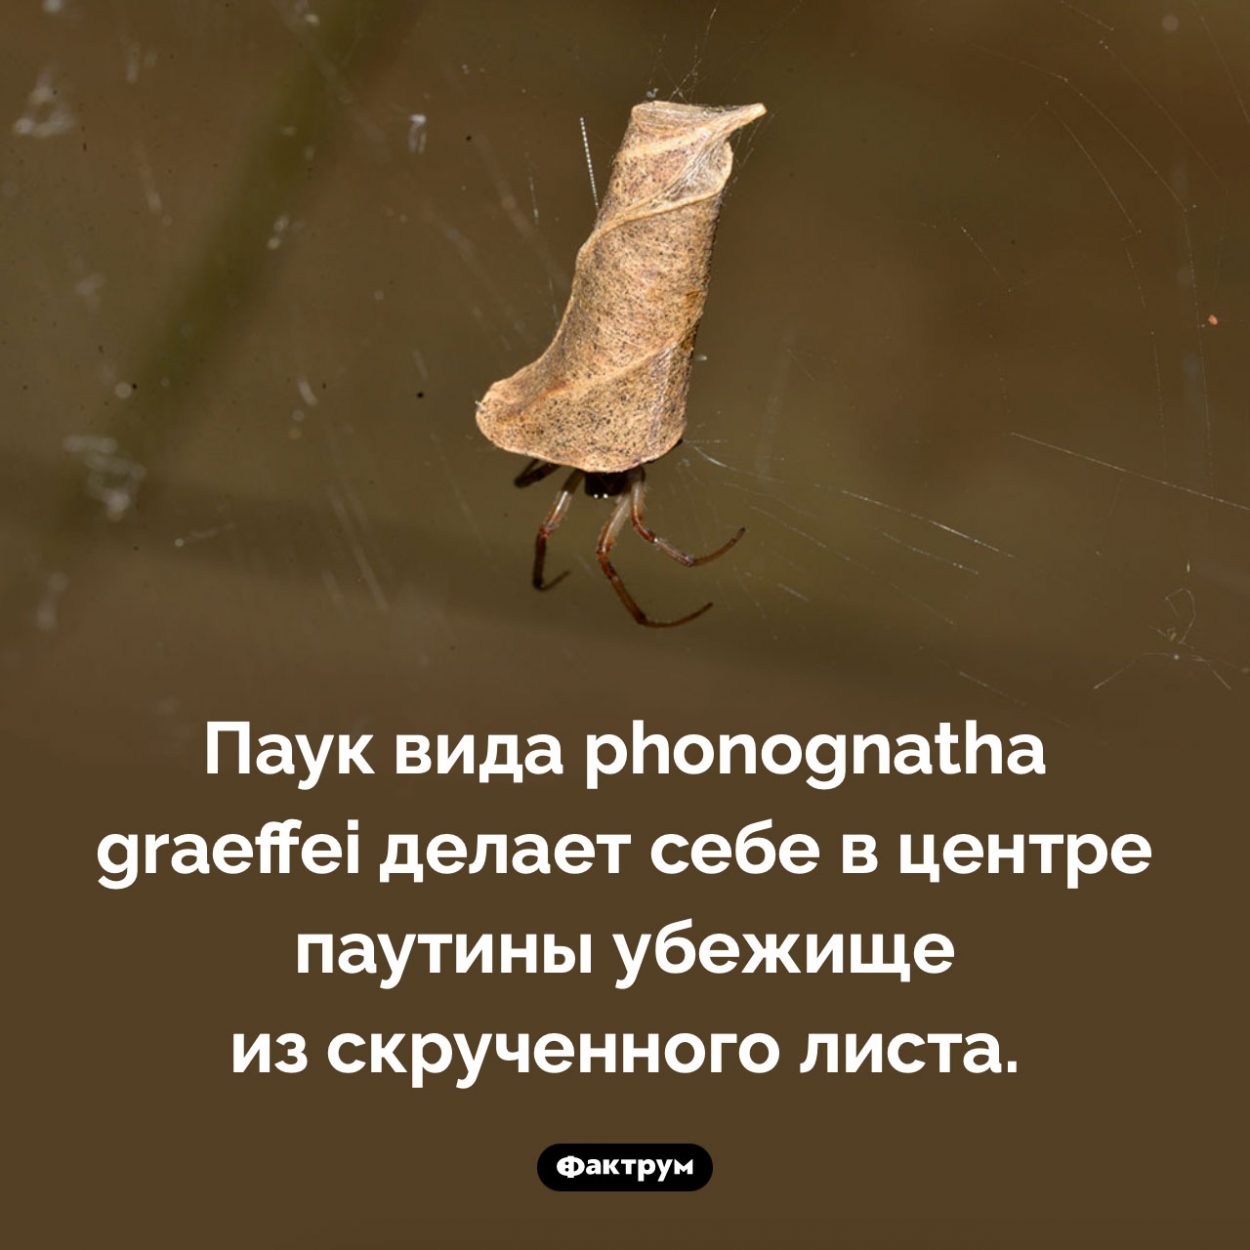 Паук, скручивающий листья. Паук вида <em>Phonognatha graeffei</em> делает себе в центре паутины убежище из скрученного листа.
